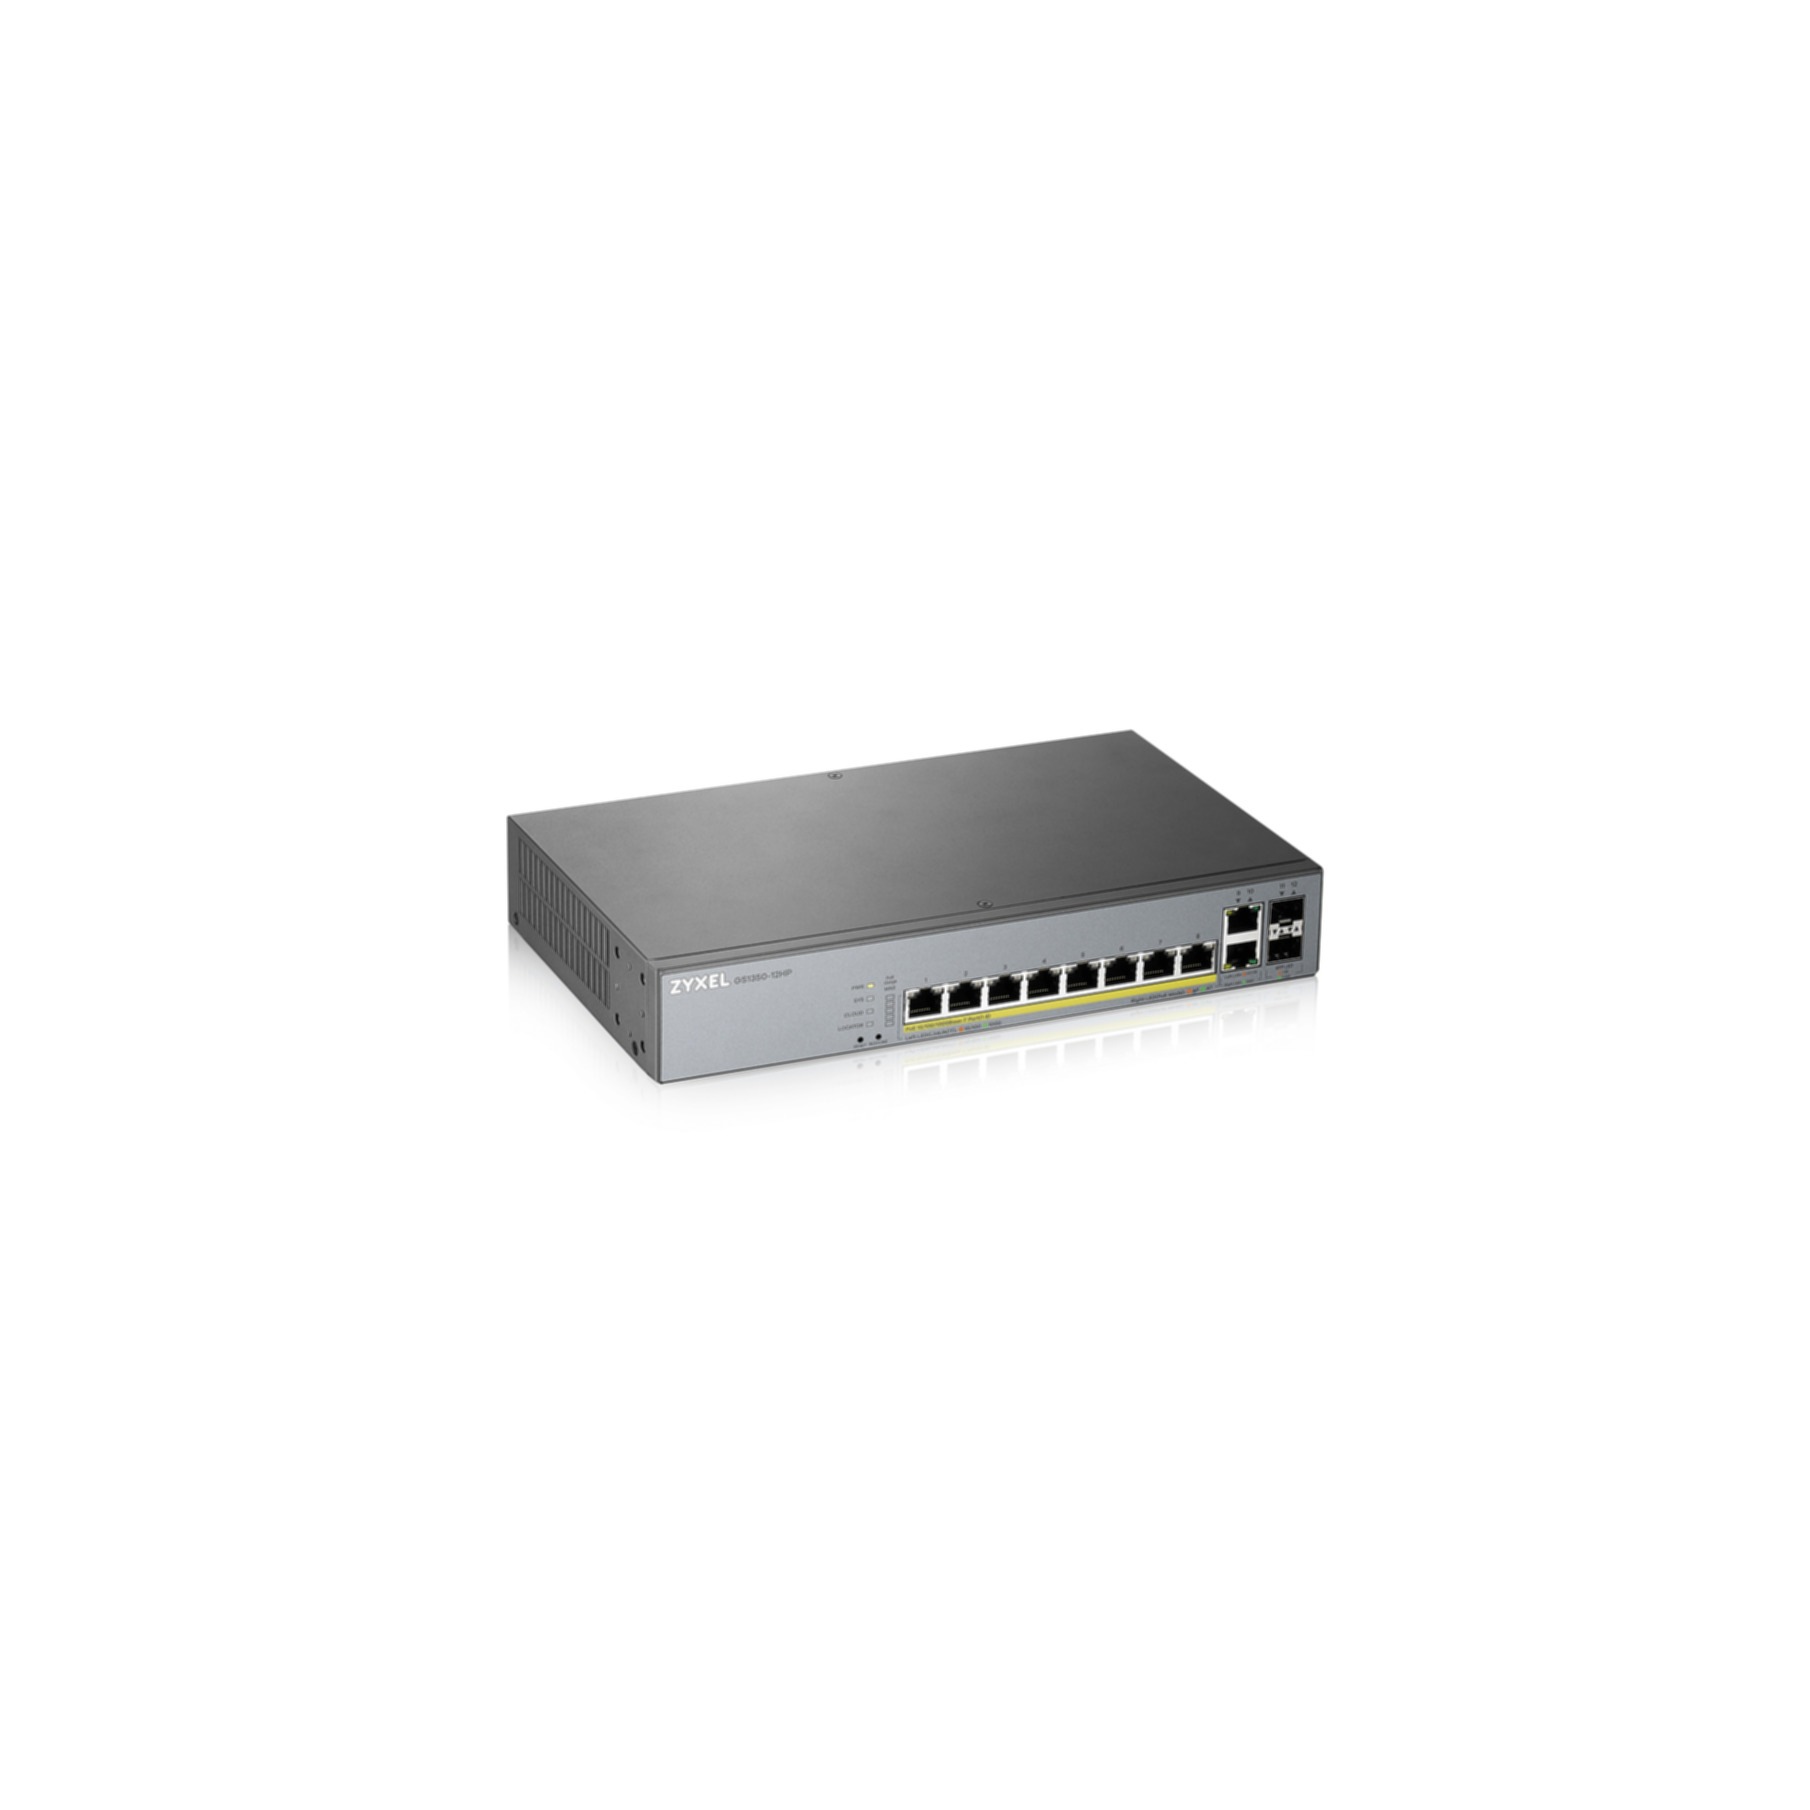 Netzwerk-Switch »GS1350-12HP-EU0101F«